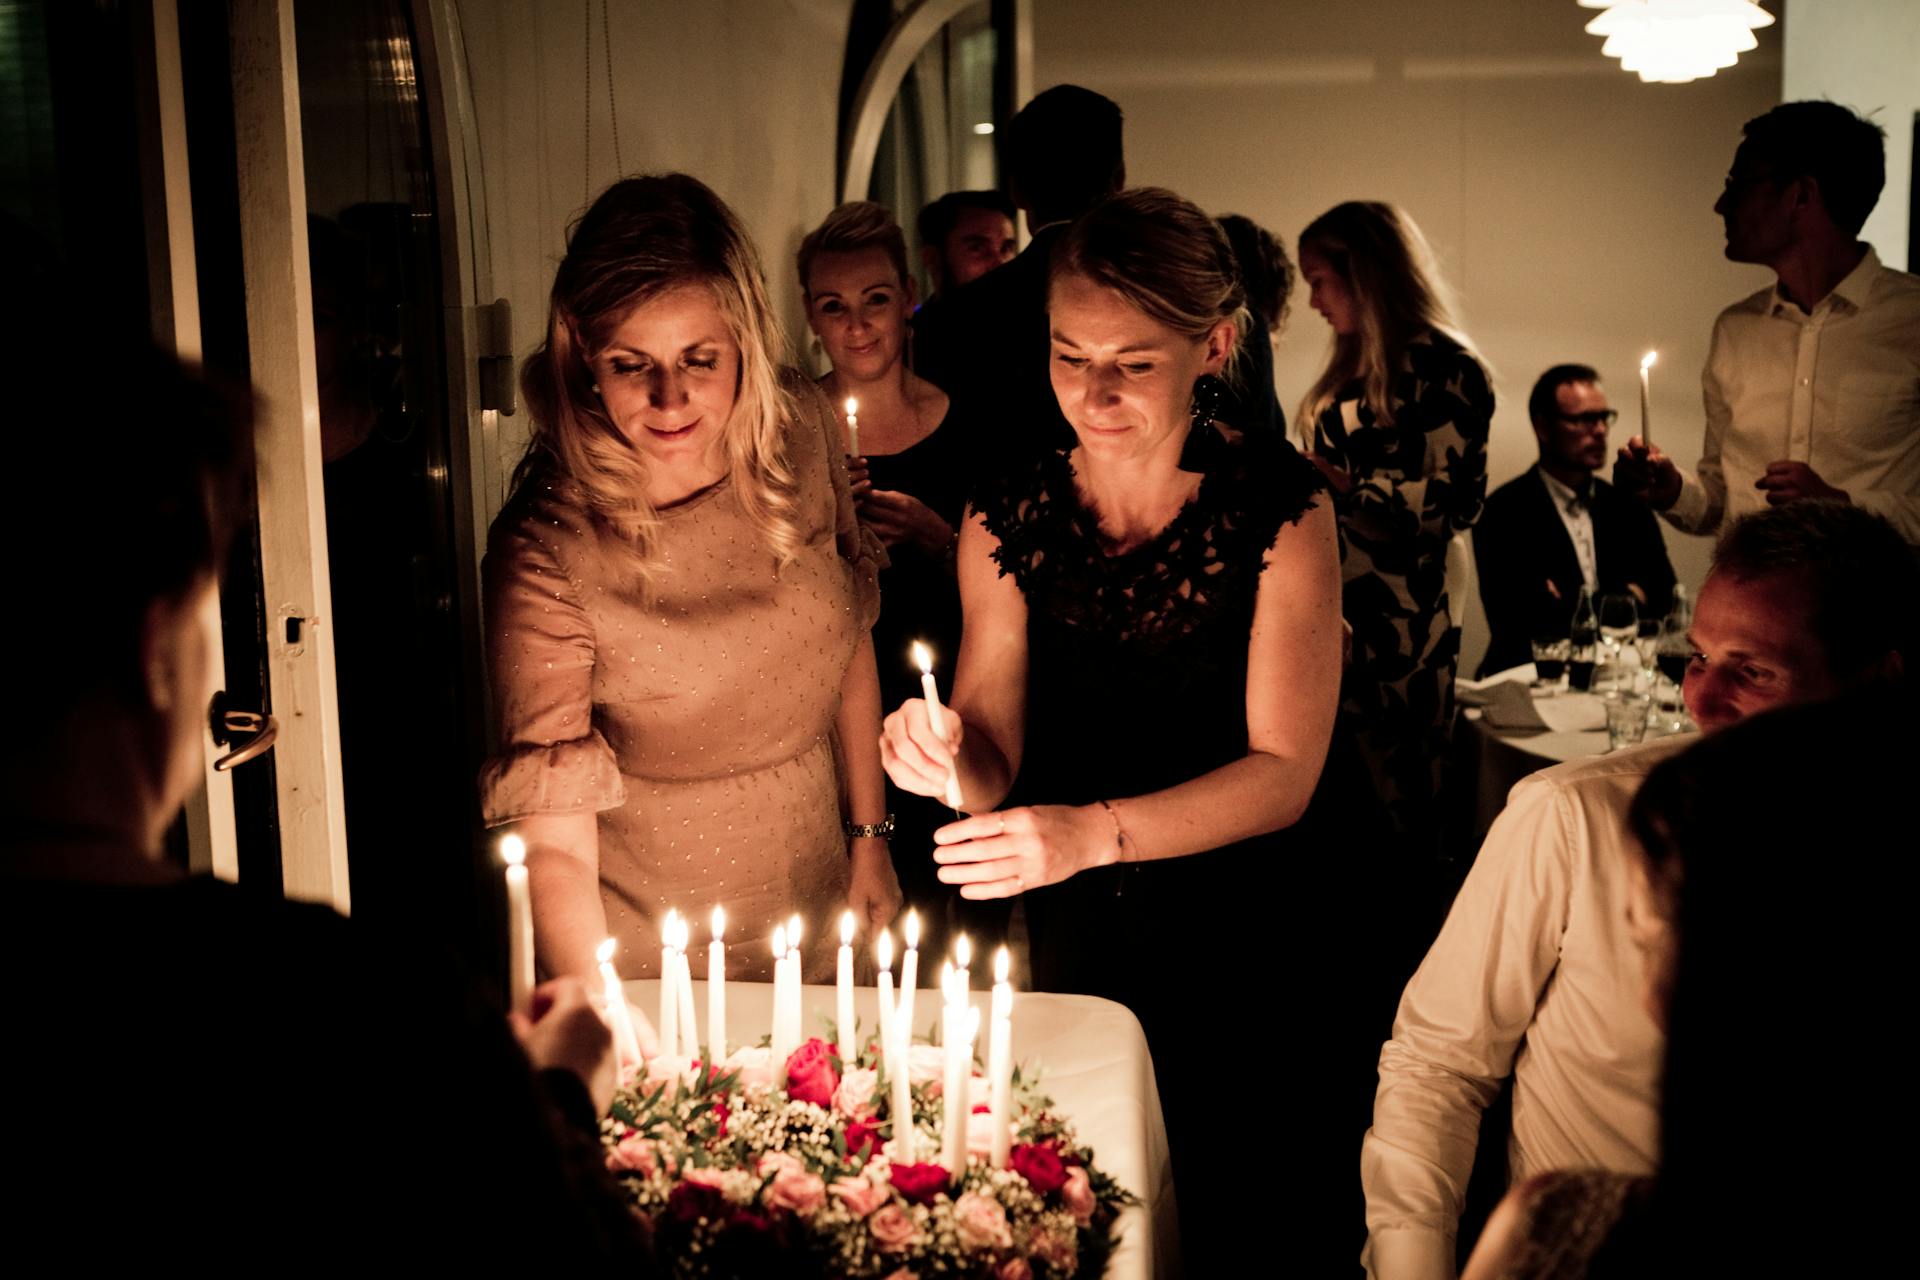 Deux femmes tenant des bougies lors d'une fête d'anniversaire | Source : Pexels